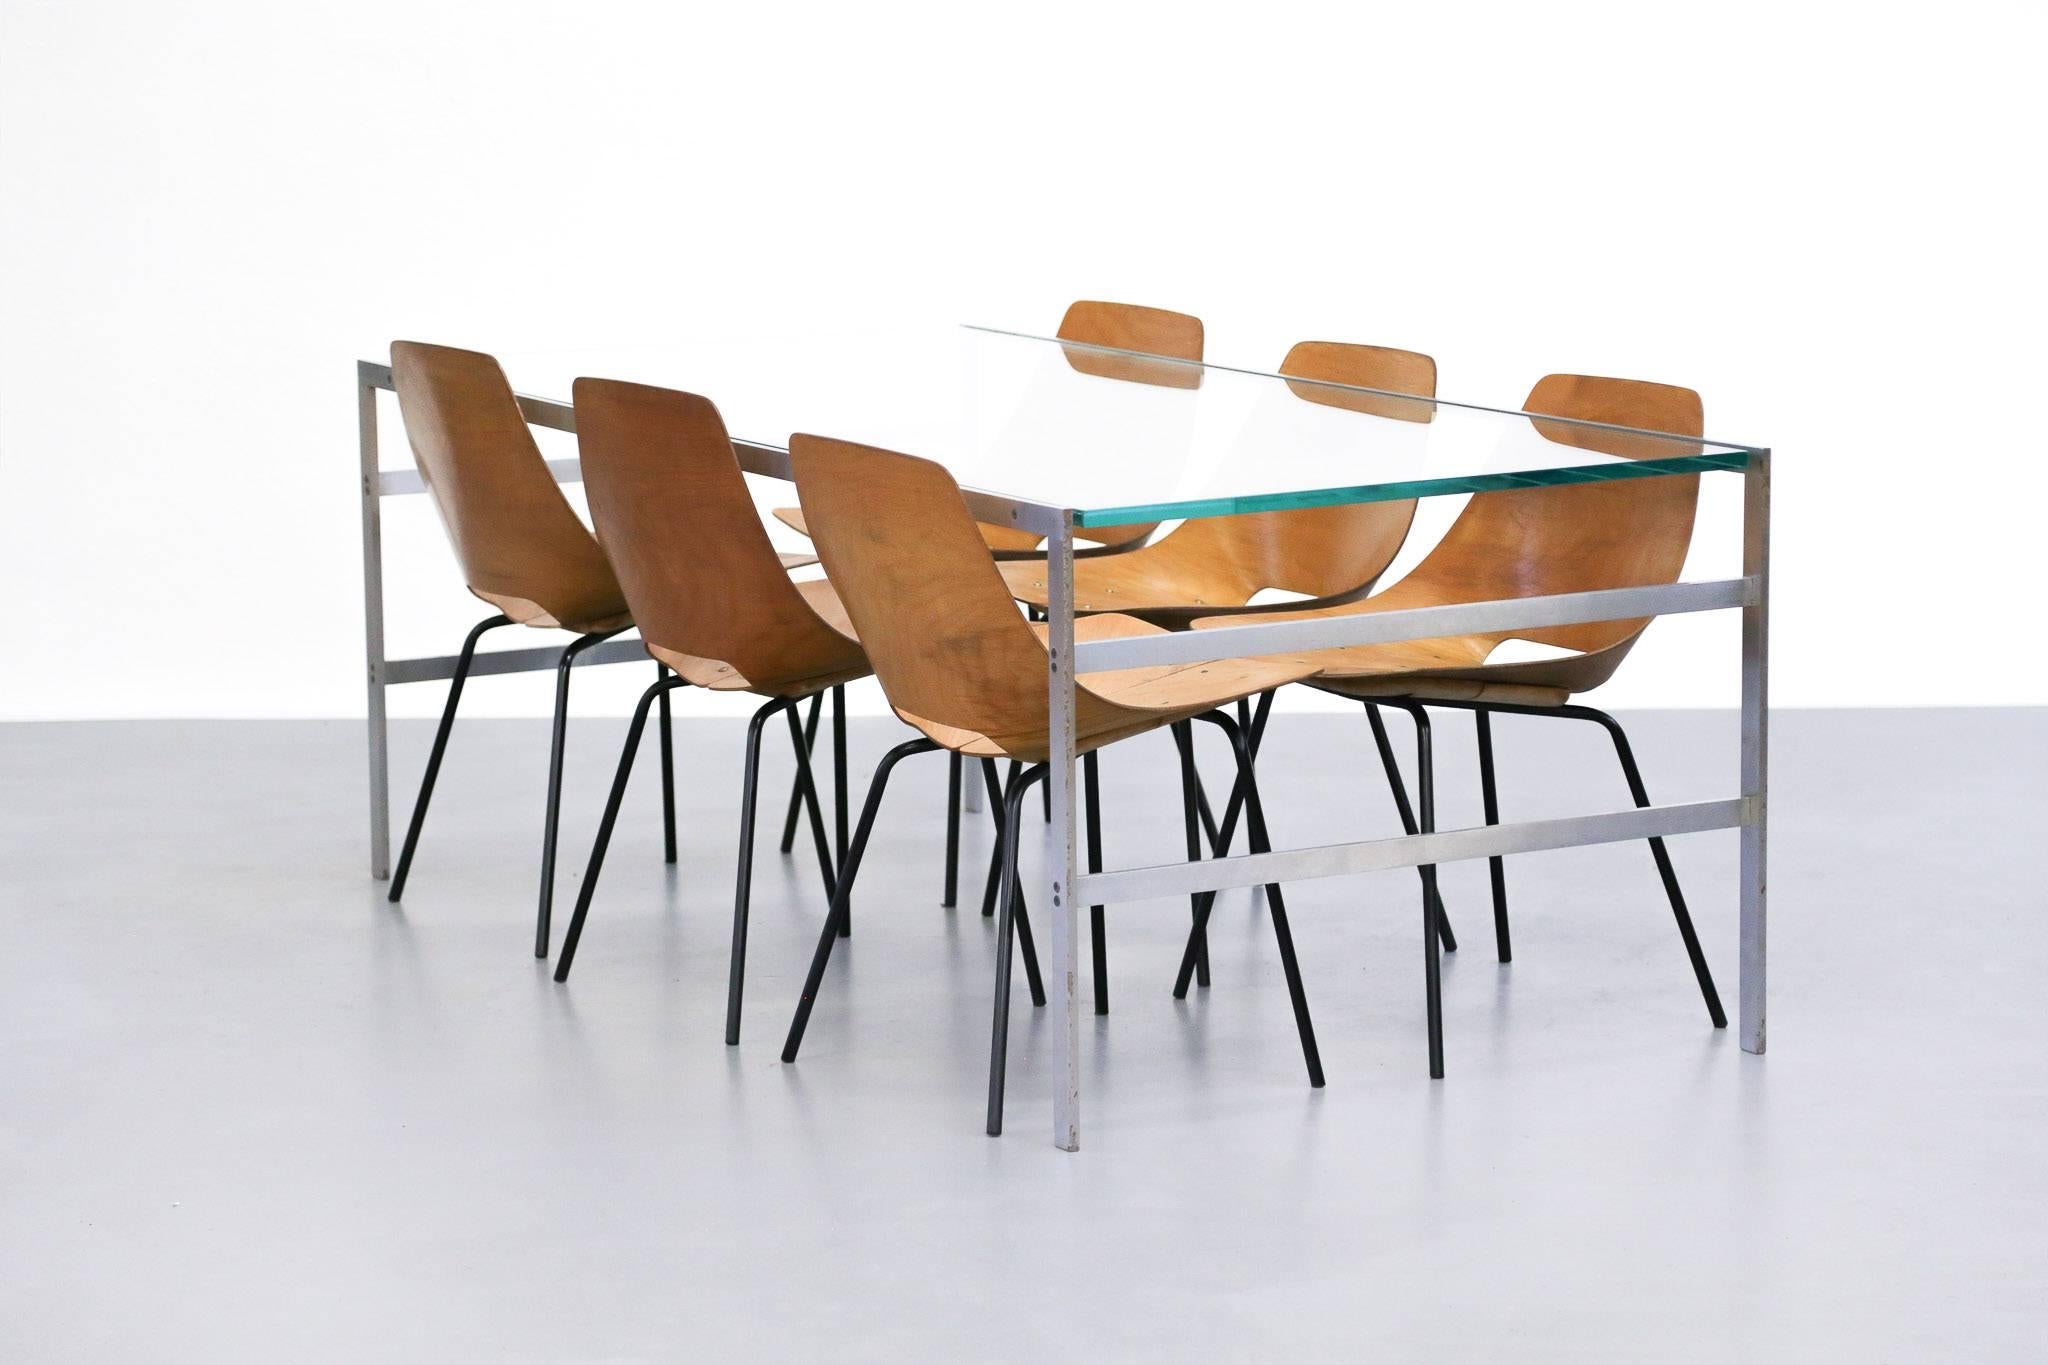 Seltener Esstisch, entworfen von Preben Fabricius und Jorgen Kastholm für Bo-Ex.
Sockel aus Stahl mit einer Glasplatte.